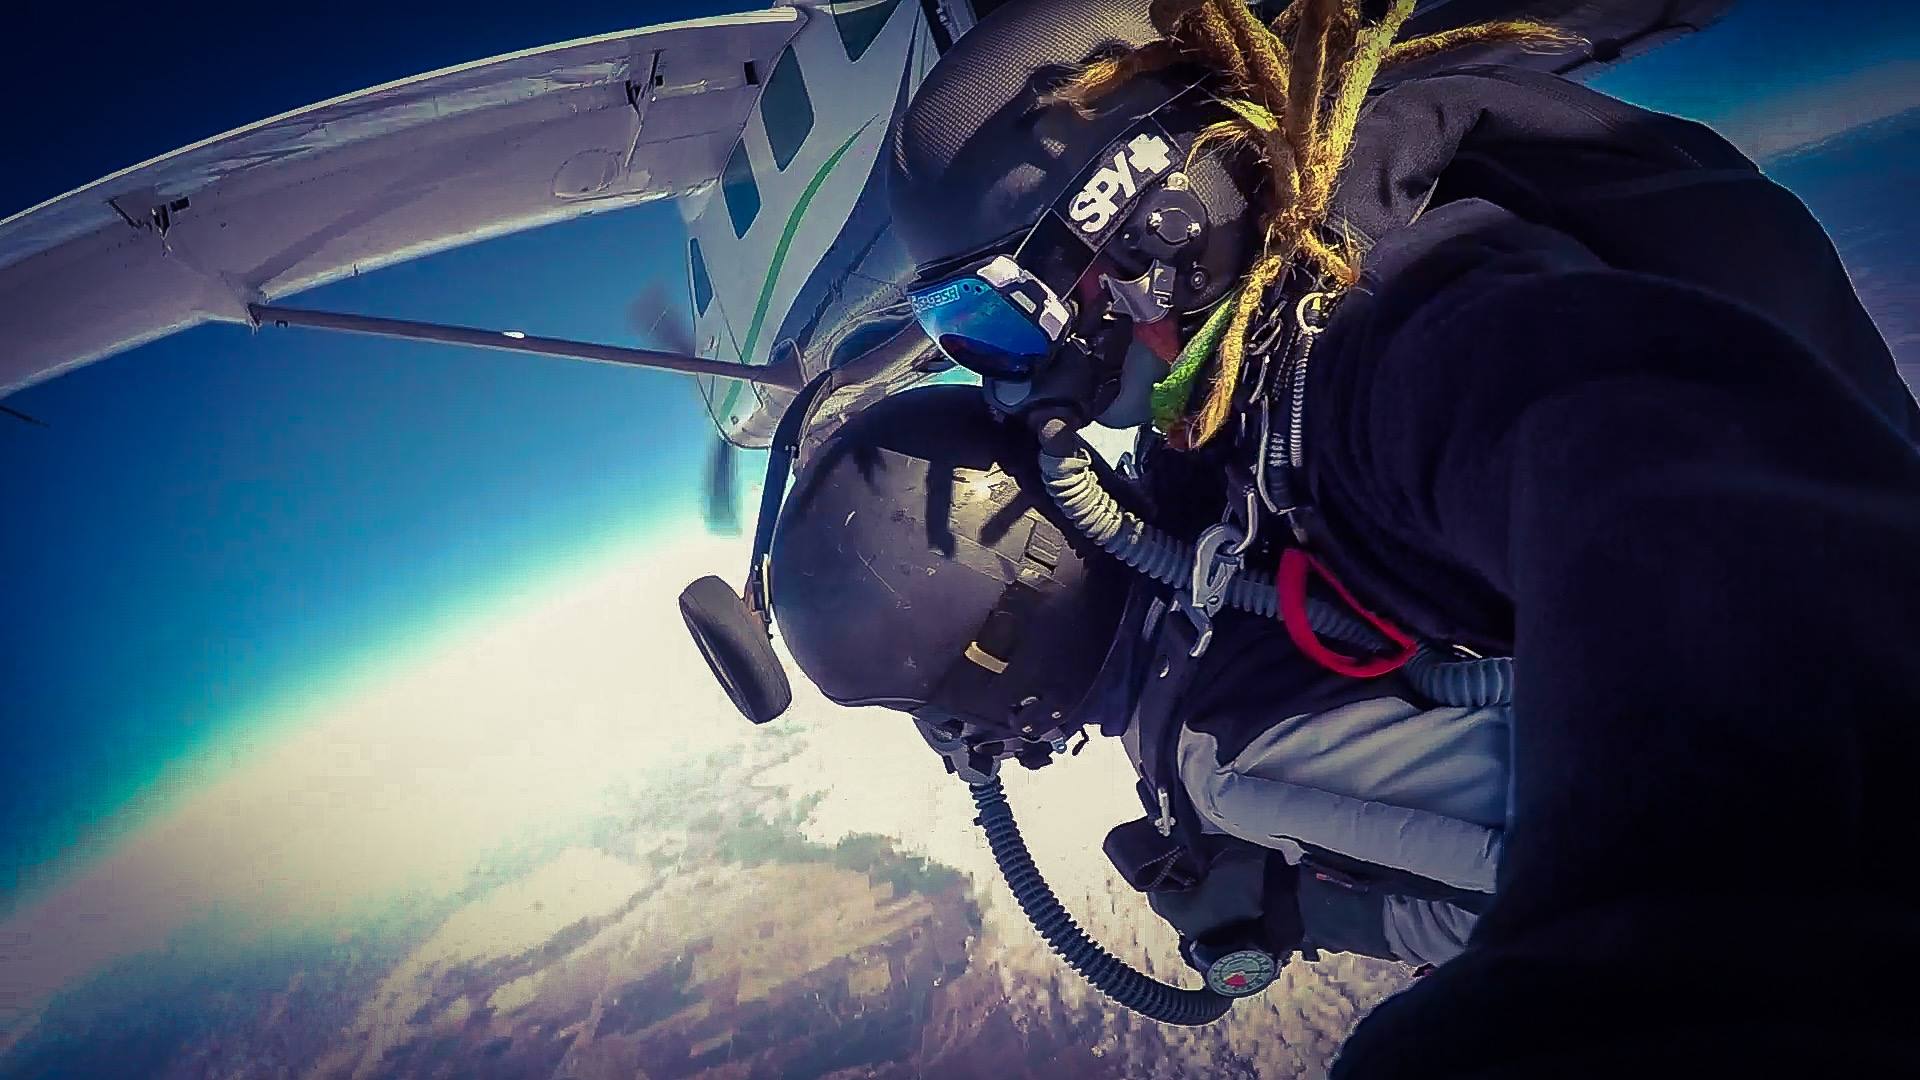 skydiving in california